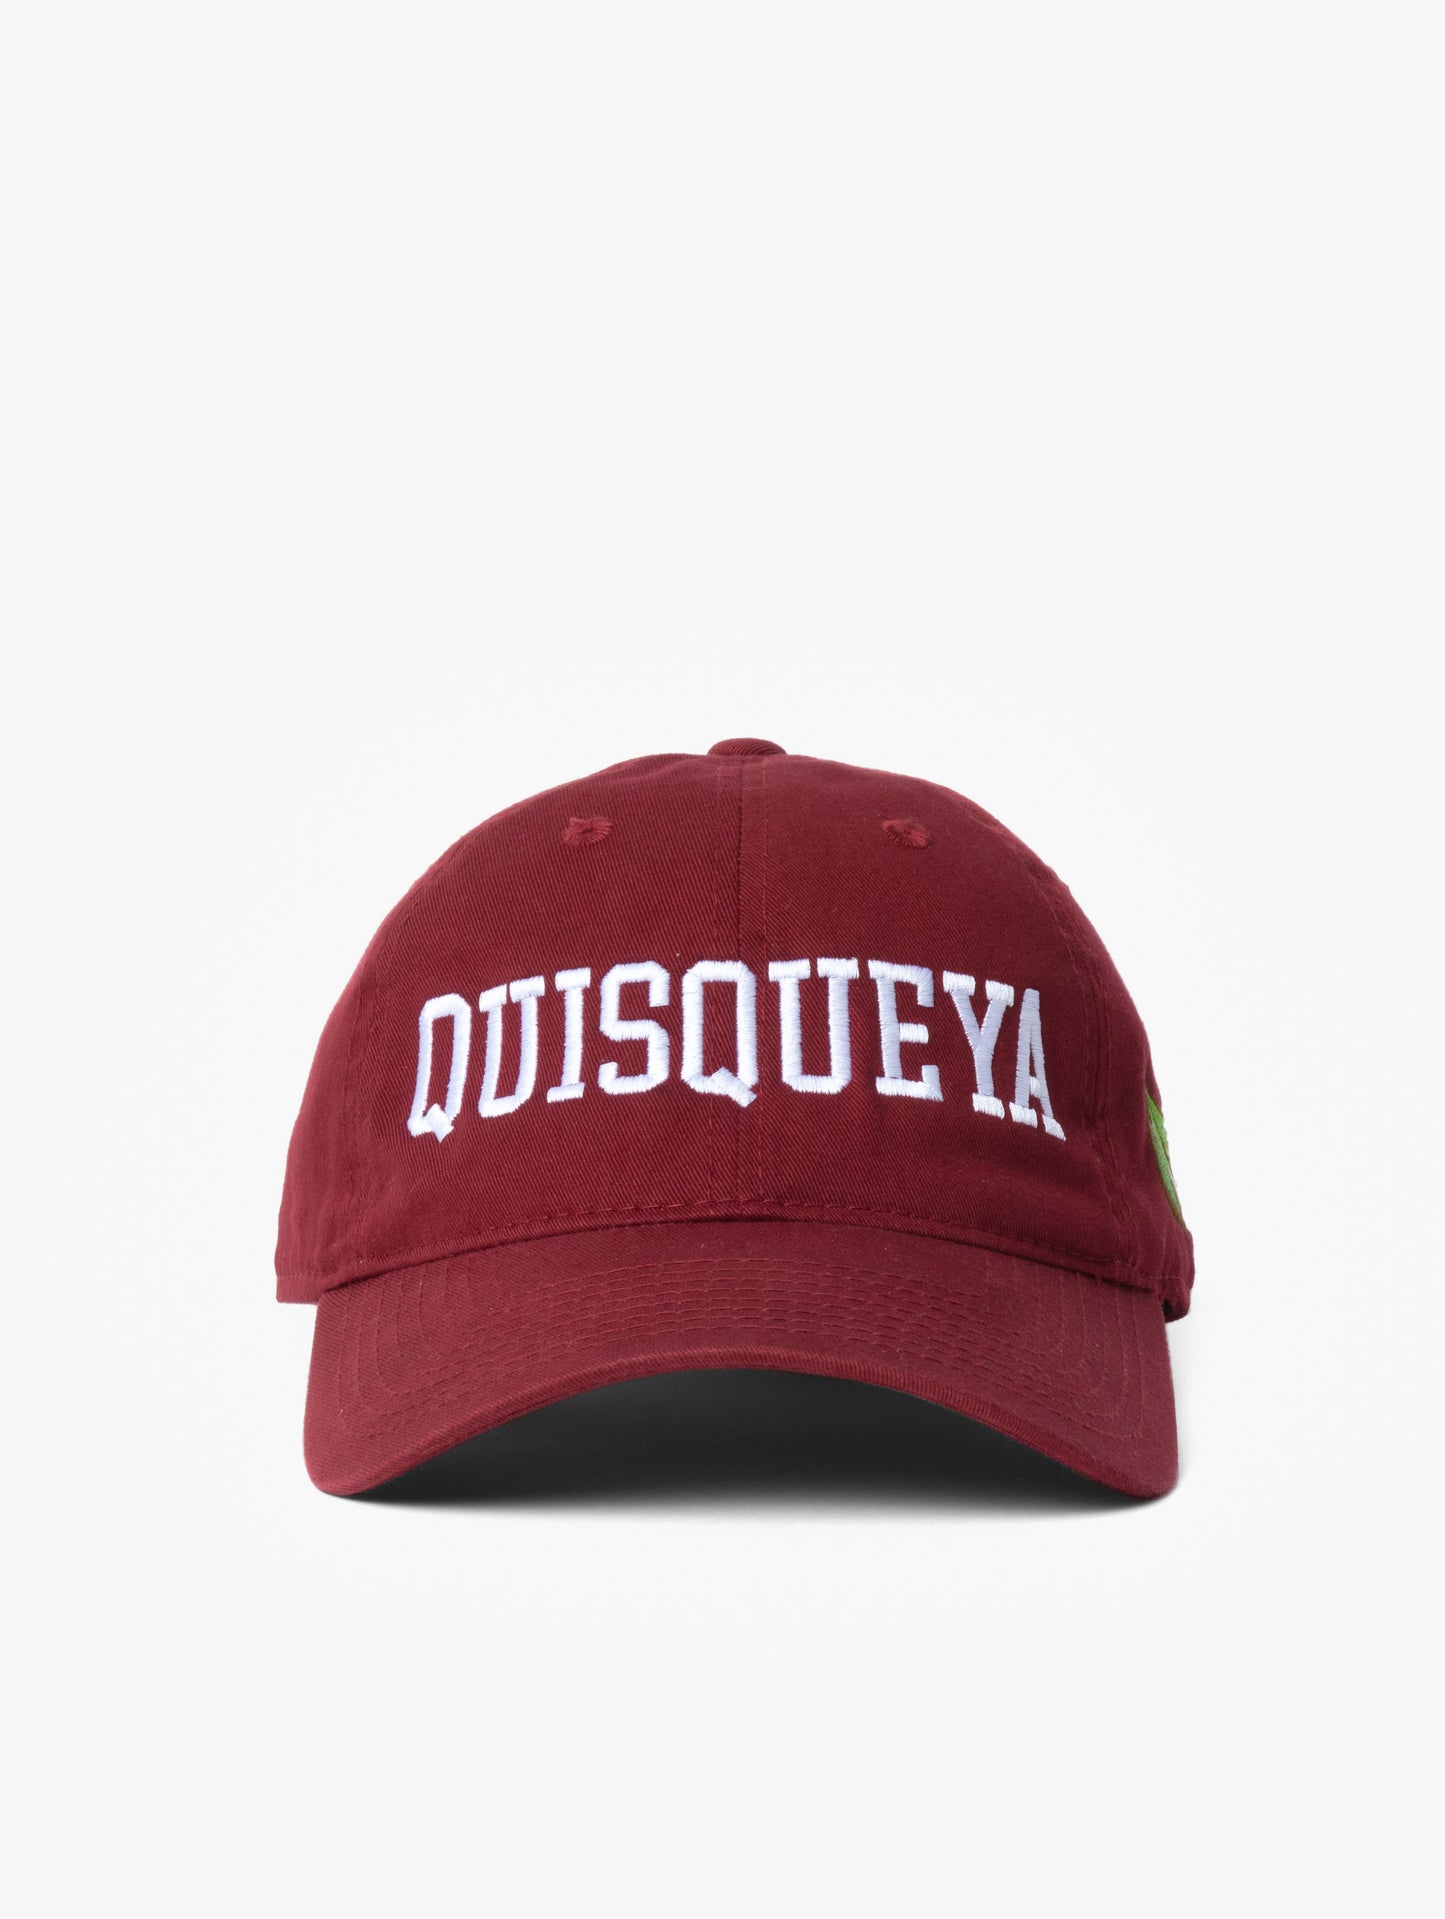 Quisqueya! Dad-hat